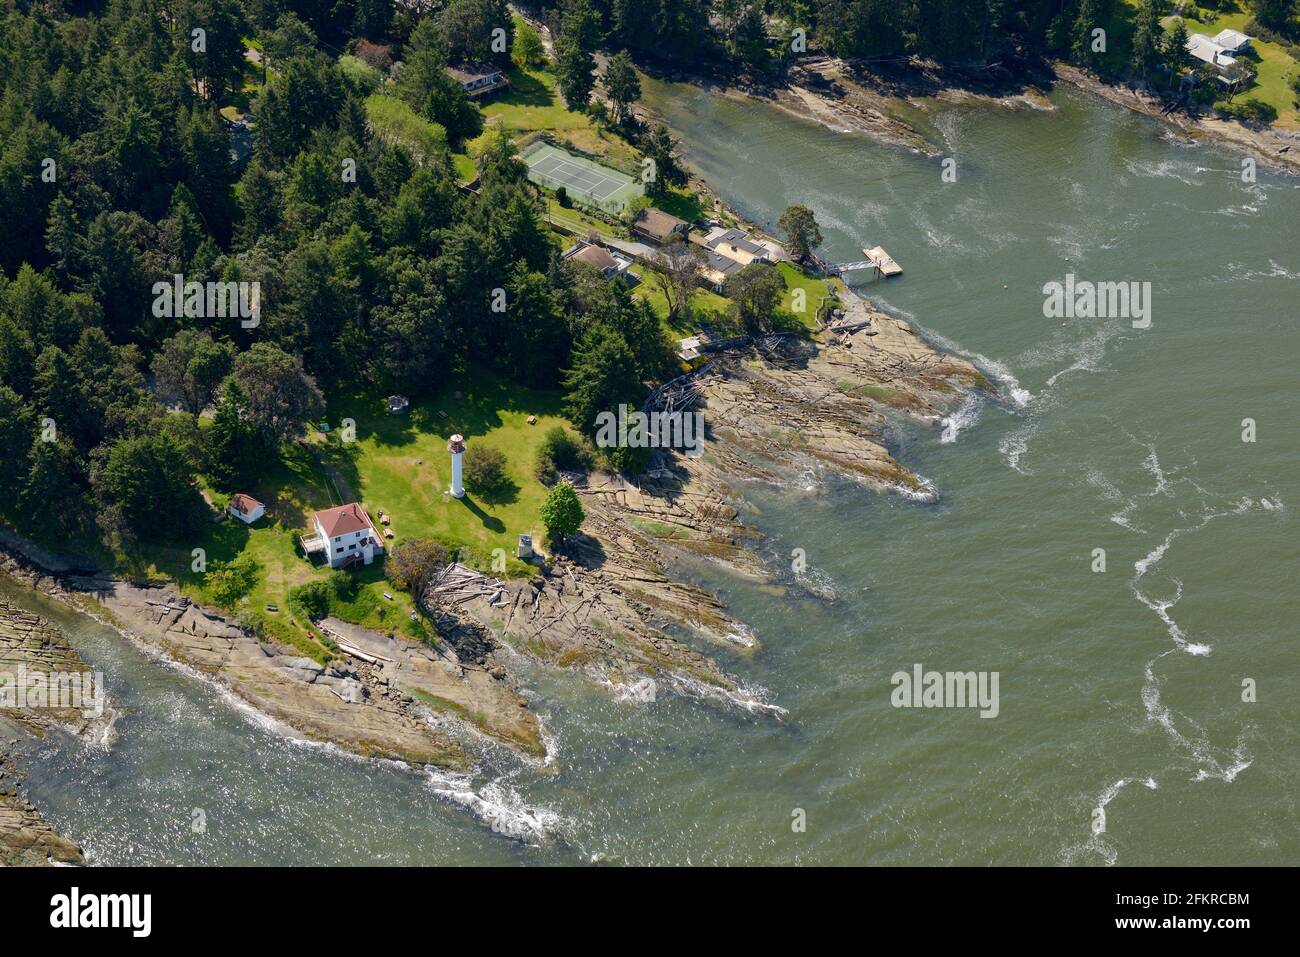 Phare de Georgina point, île Mayne, C.-B. Photographies aériennes des îles du Golfe Sud. Colombie-Britannique, Canada. Banque D'Images